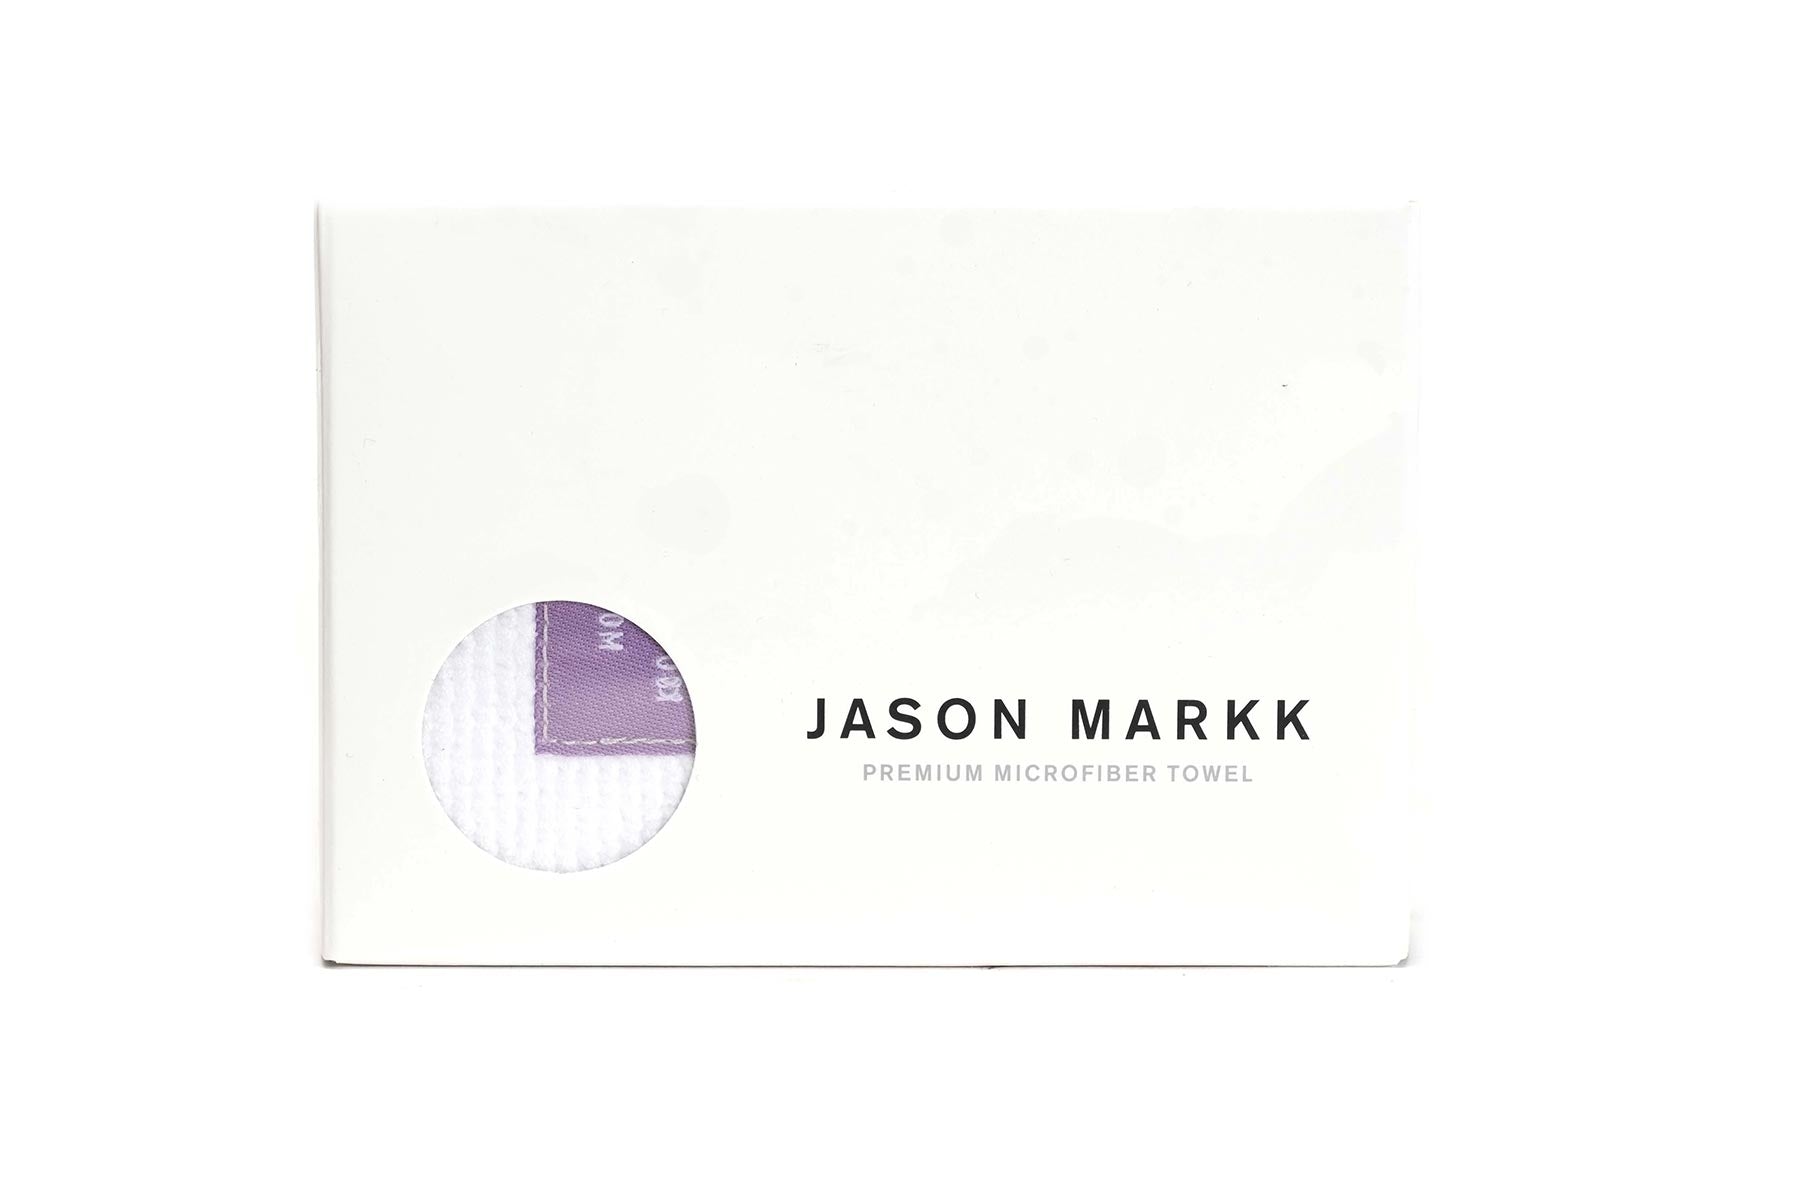 Jason Markk - Microfiber towel